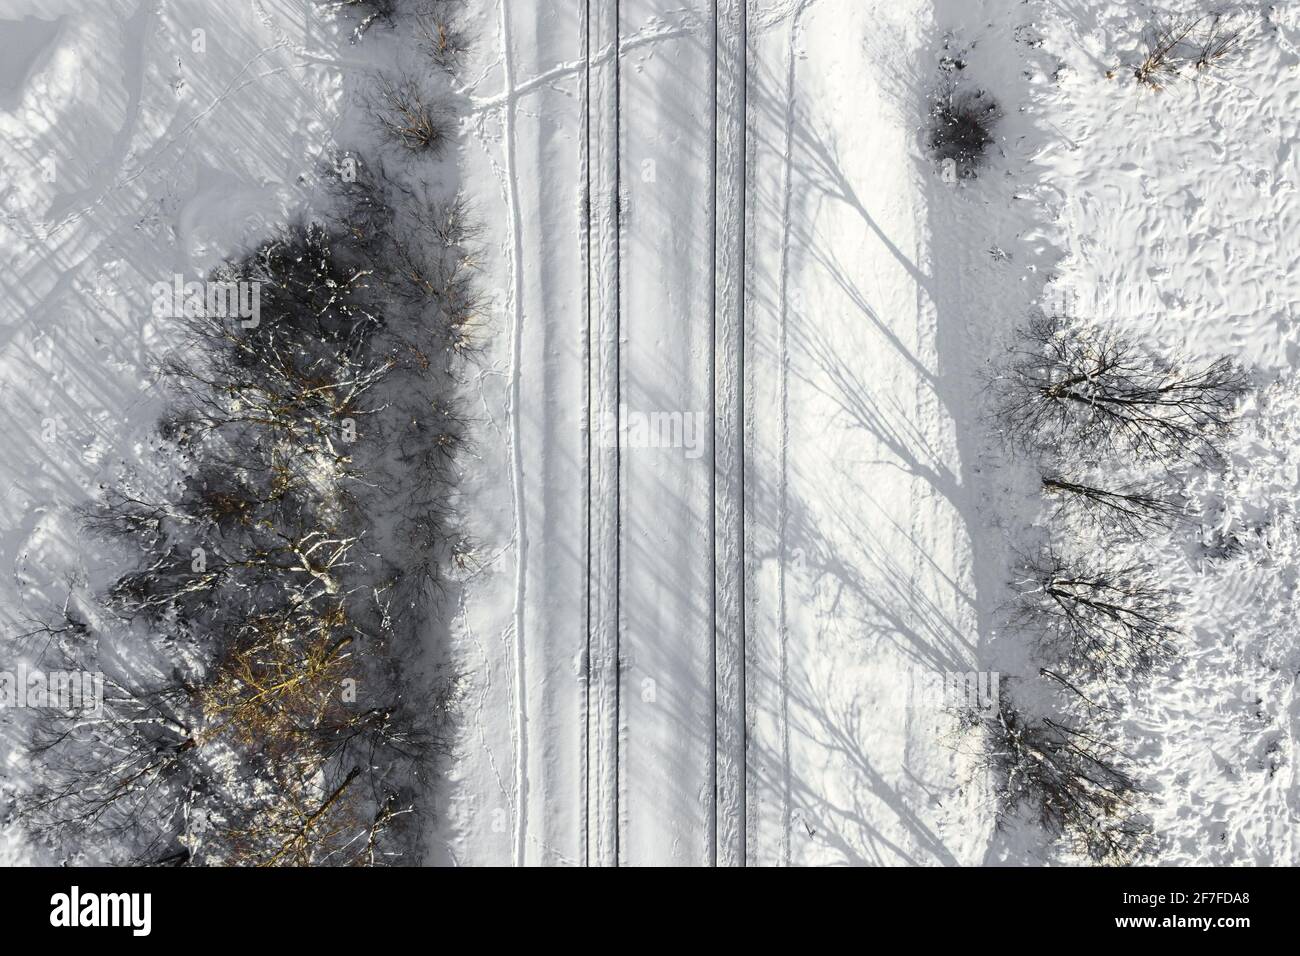 Vista aerea di una ferrovia a doppio binario dopo una forte nevicata. Ferrovia invernale con neve bianca, vista dall'alto. Infrastrutture di trasporto, ferrovia, neve l Foto Stock